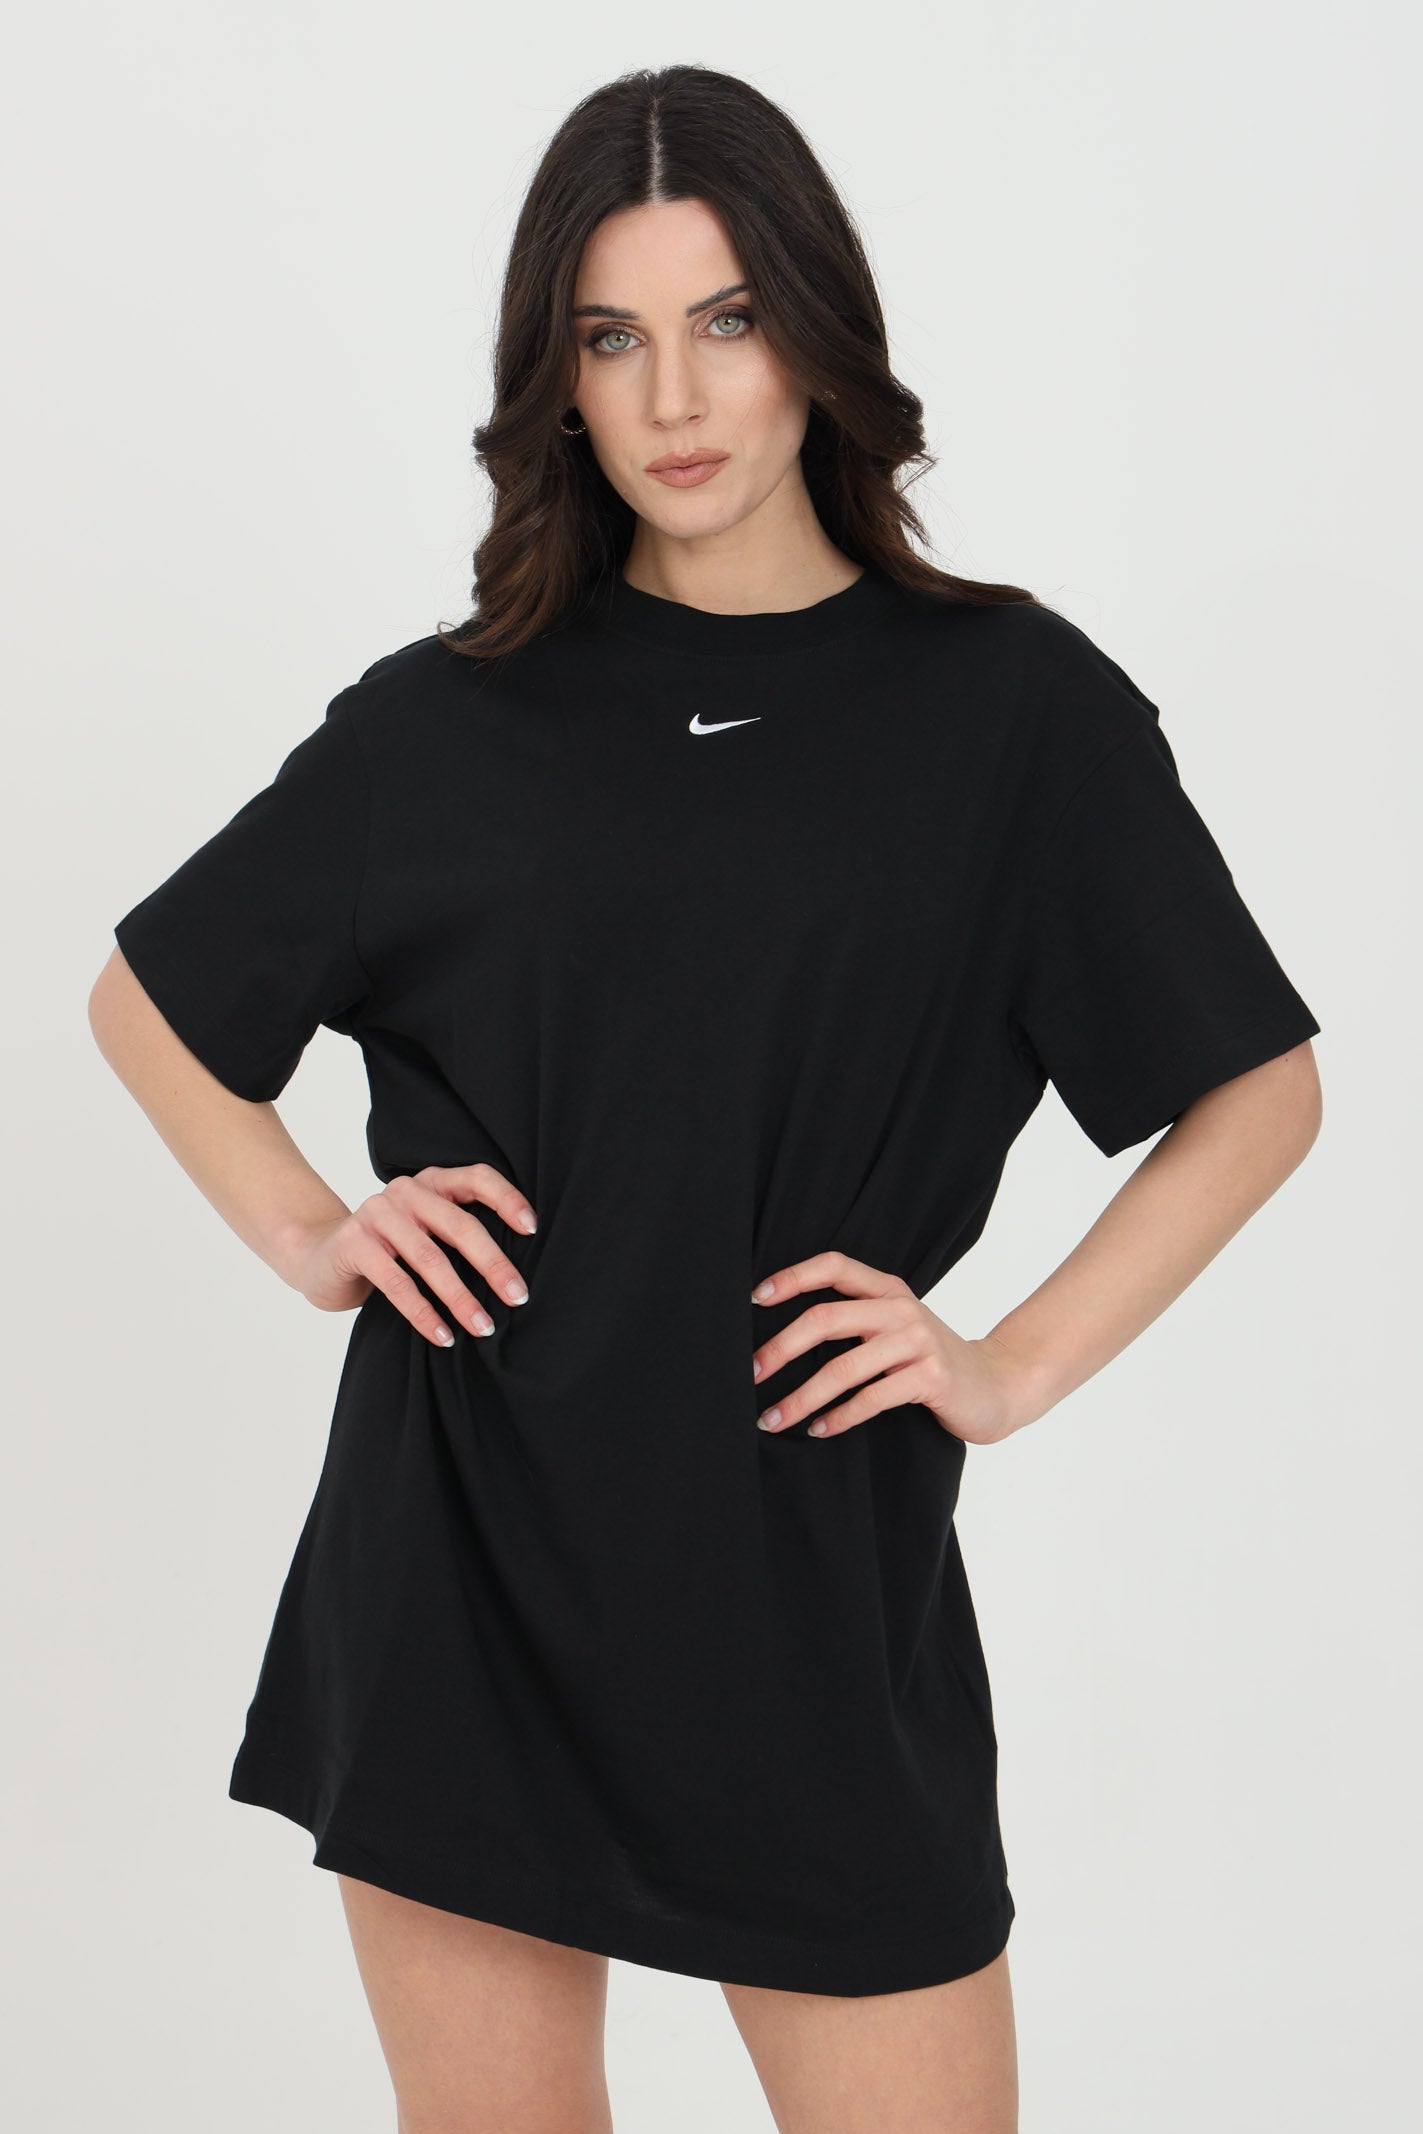 Nike Women's Sportswear Essential Dress "Black"